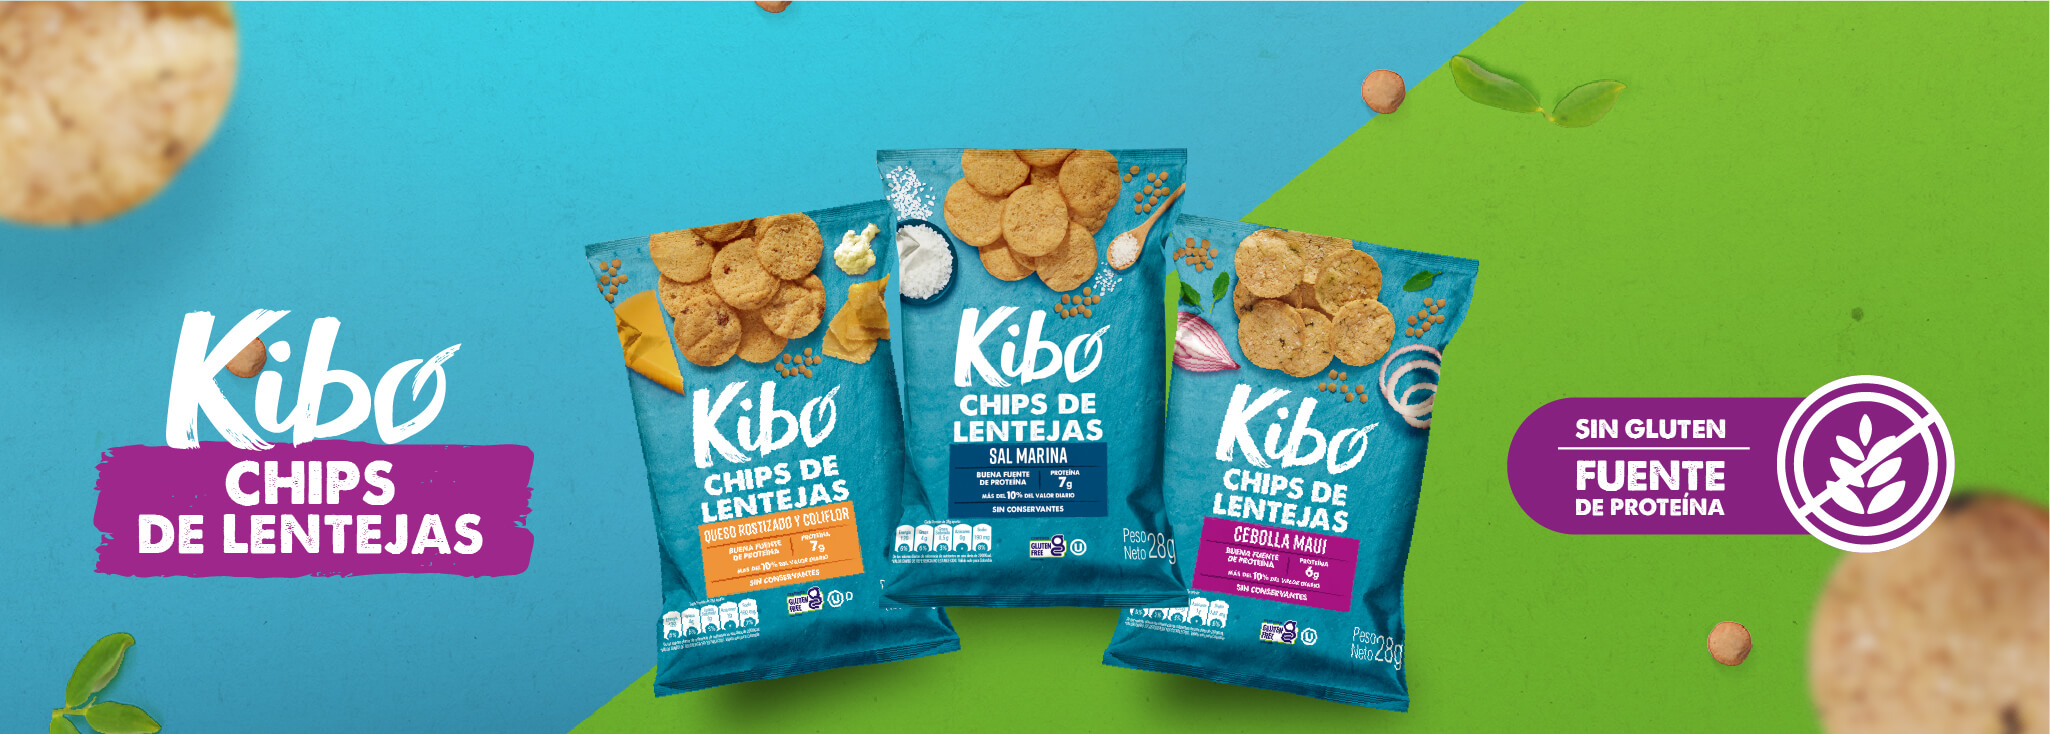 Kibo Foods Snacks Y Alimentos De Proteína De Vegetal 8894